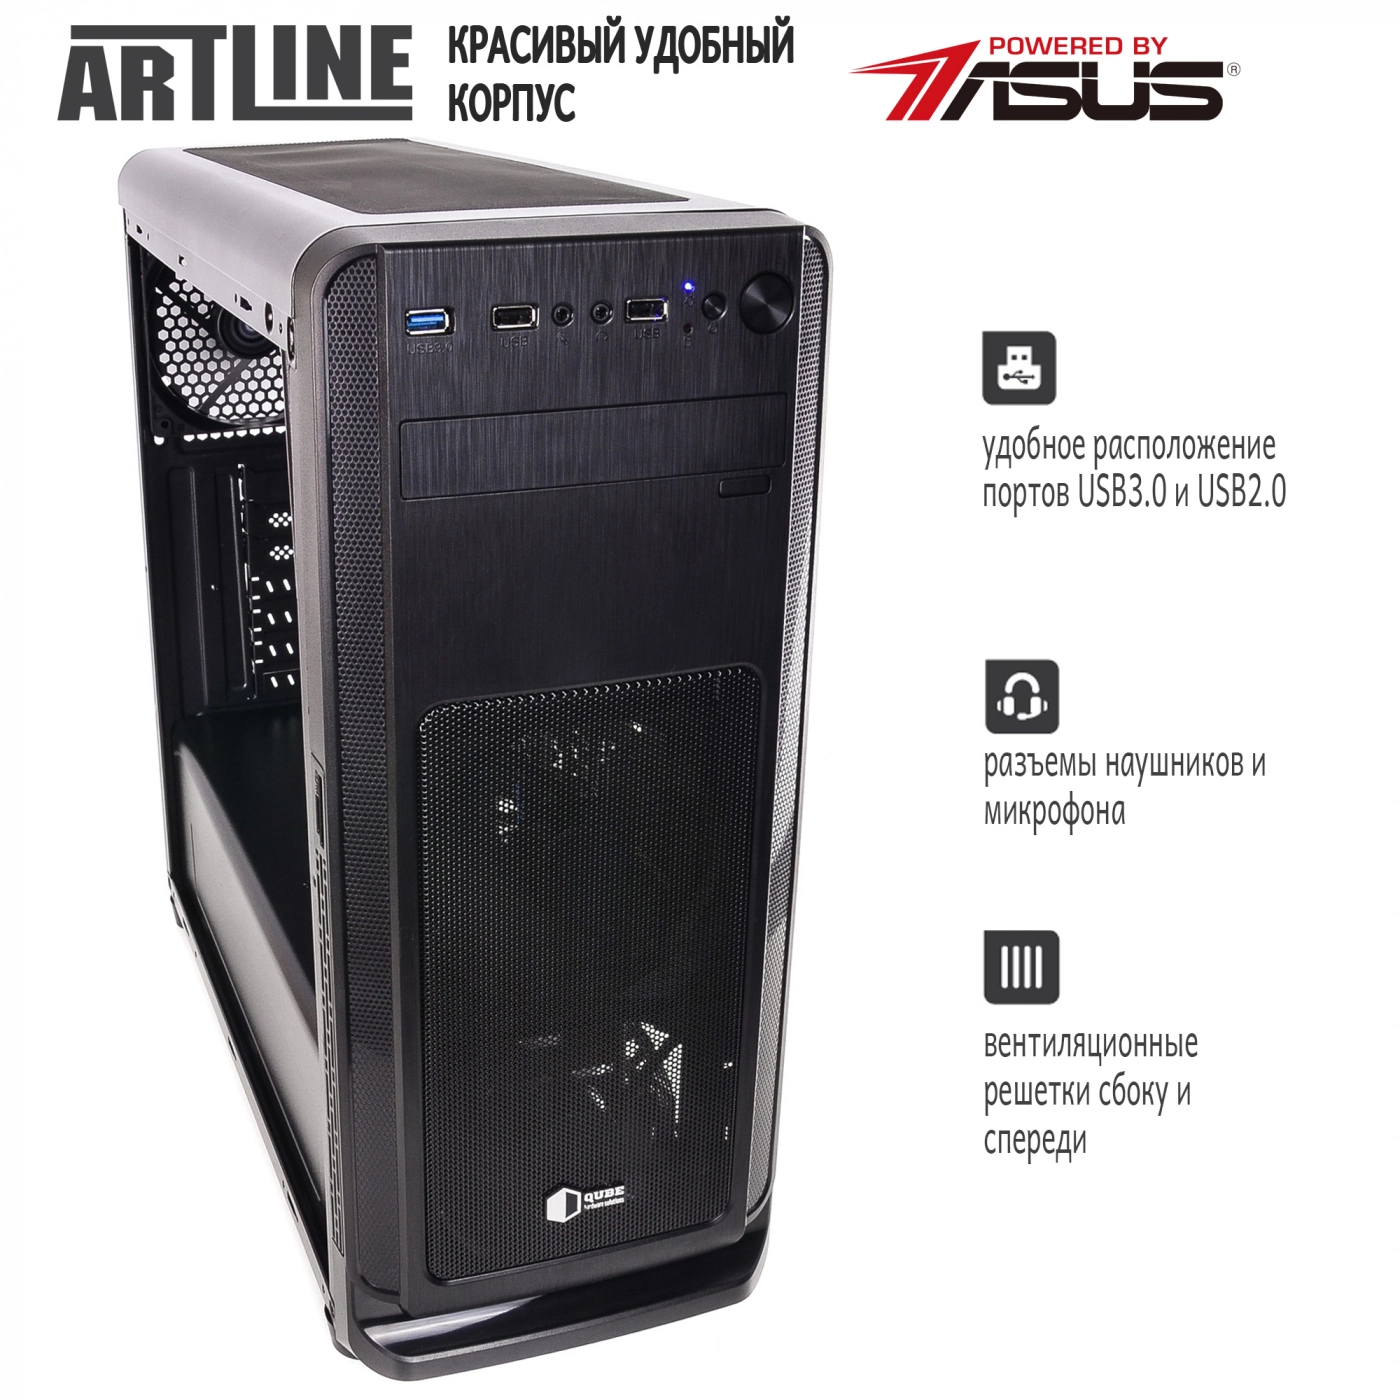 Купить Сервер ARTLINE Business T63v06 - фото 4